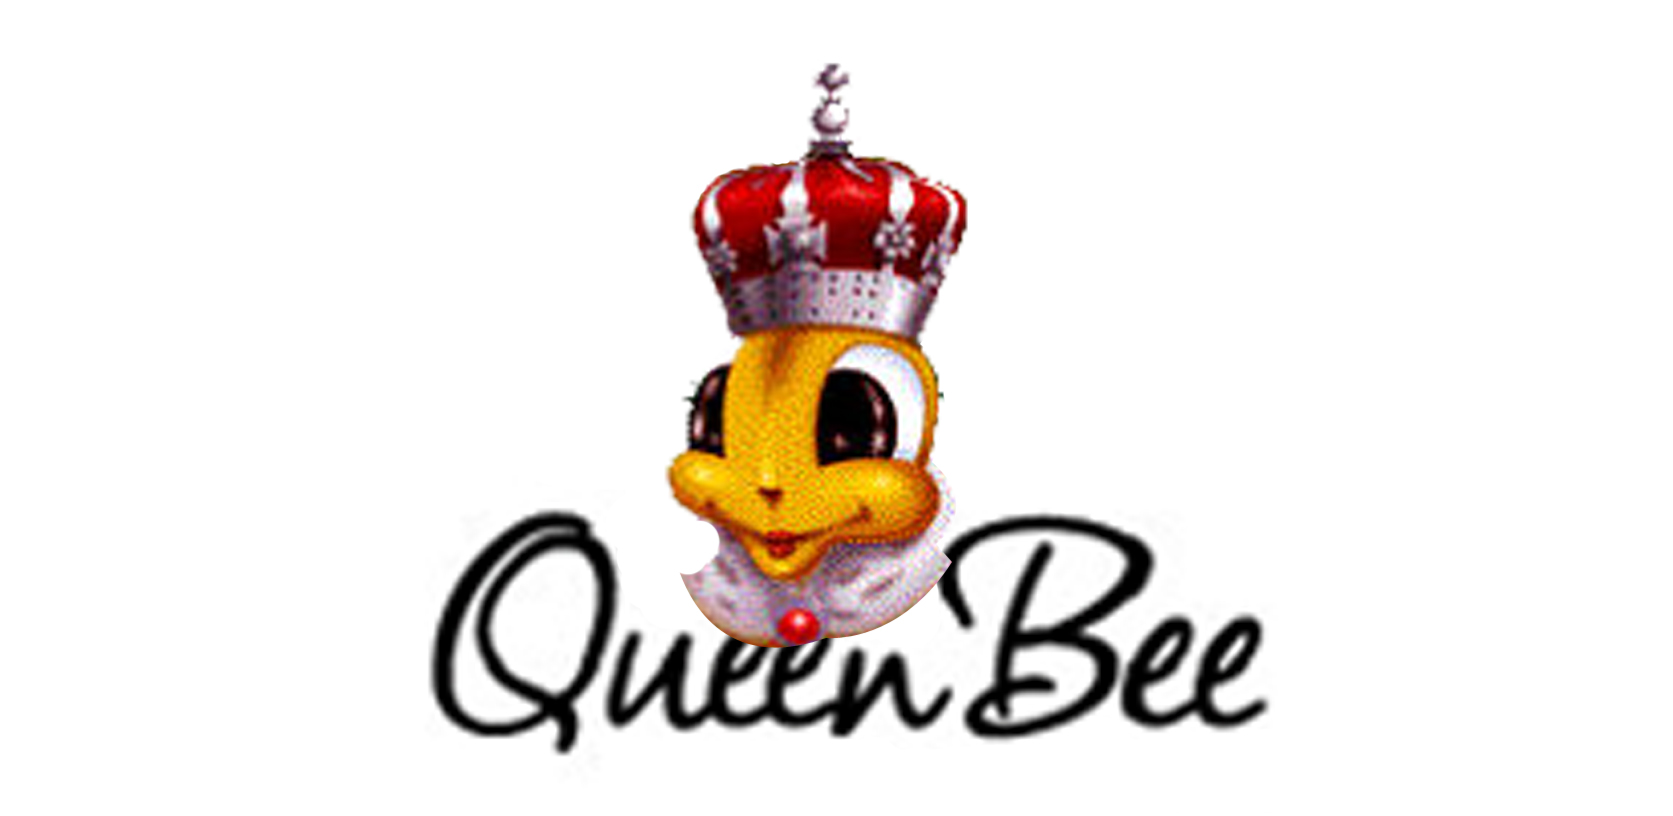 Queen bees clipart